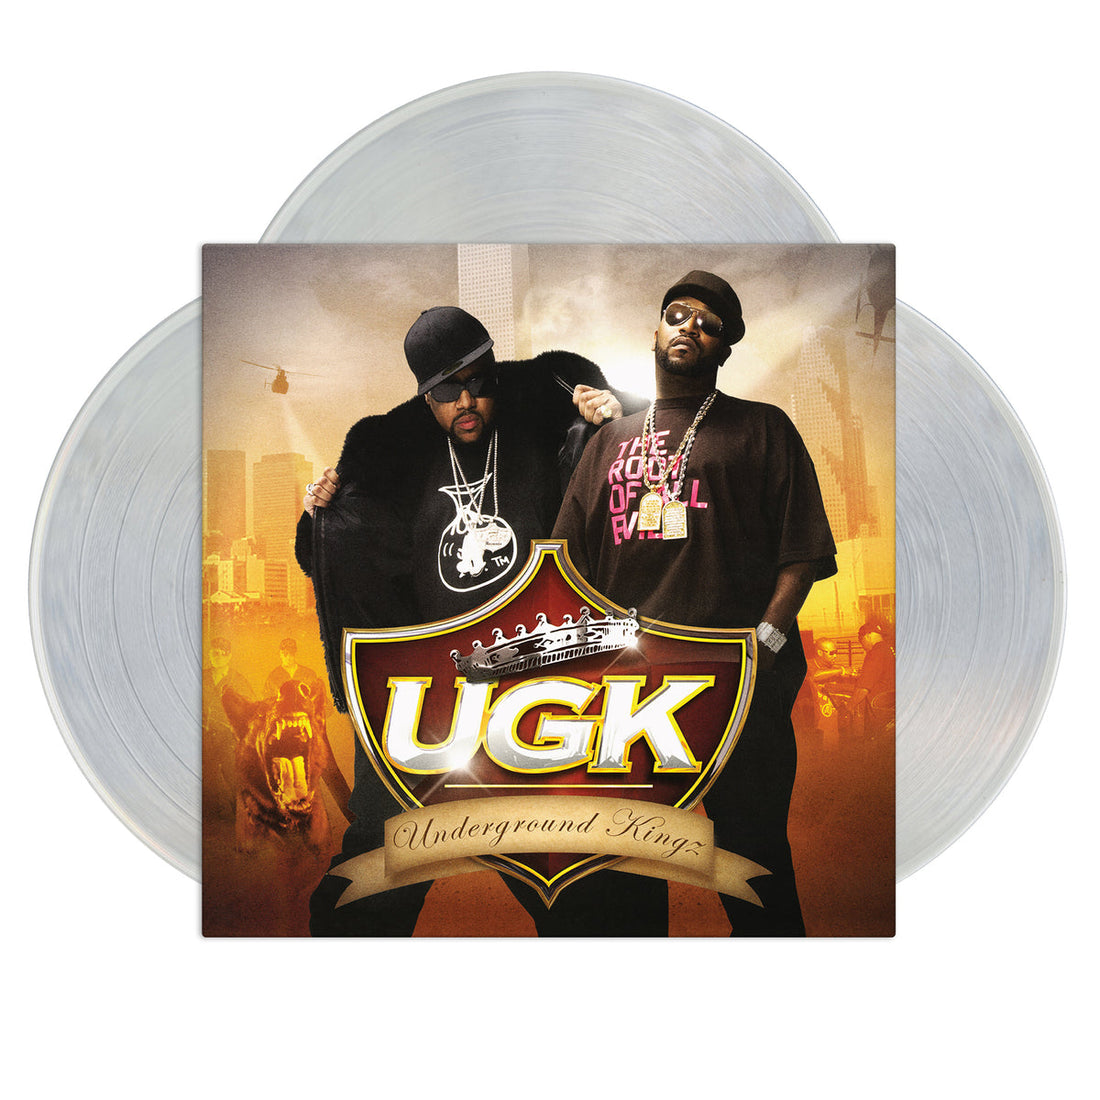 UGK "Underground Kingz" 3xLP Clear Vinyl